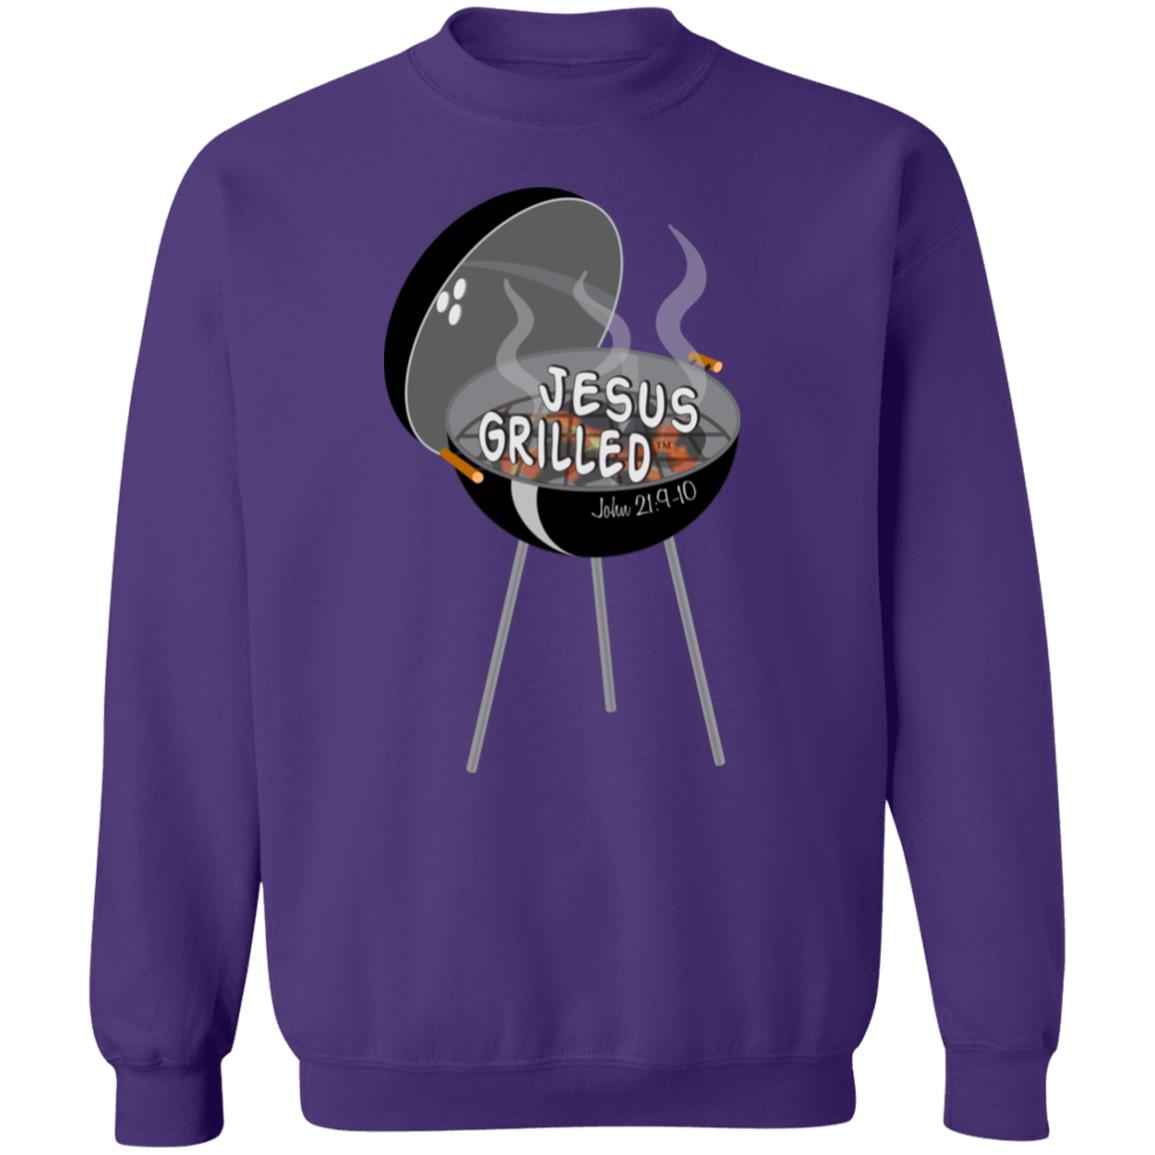 Hot Coals Men/Women Unisex Crewneck Sweatshirt